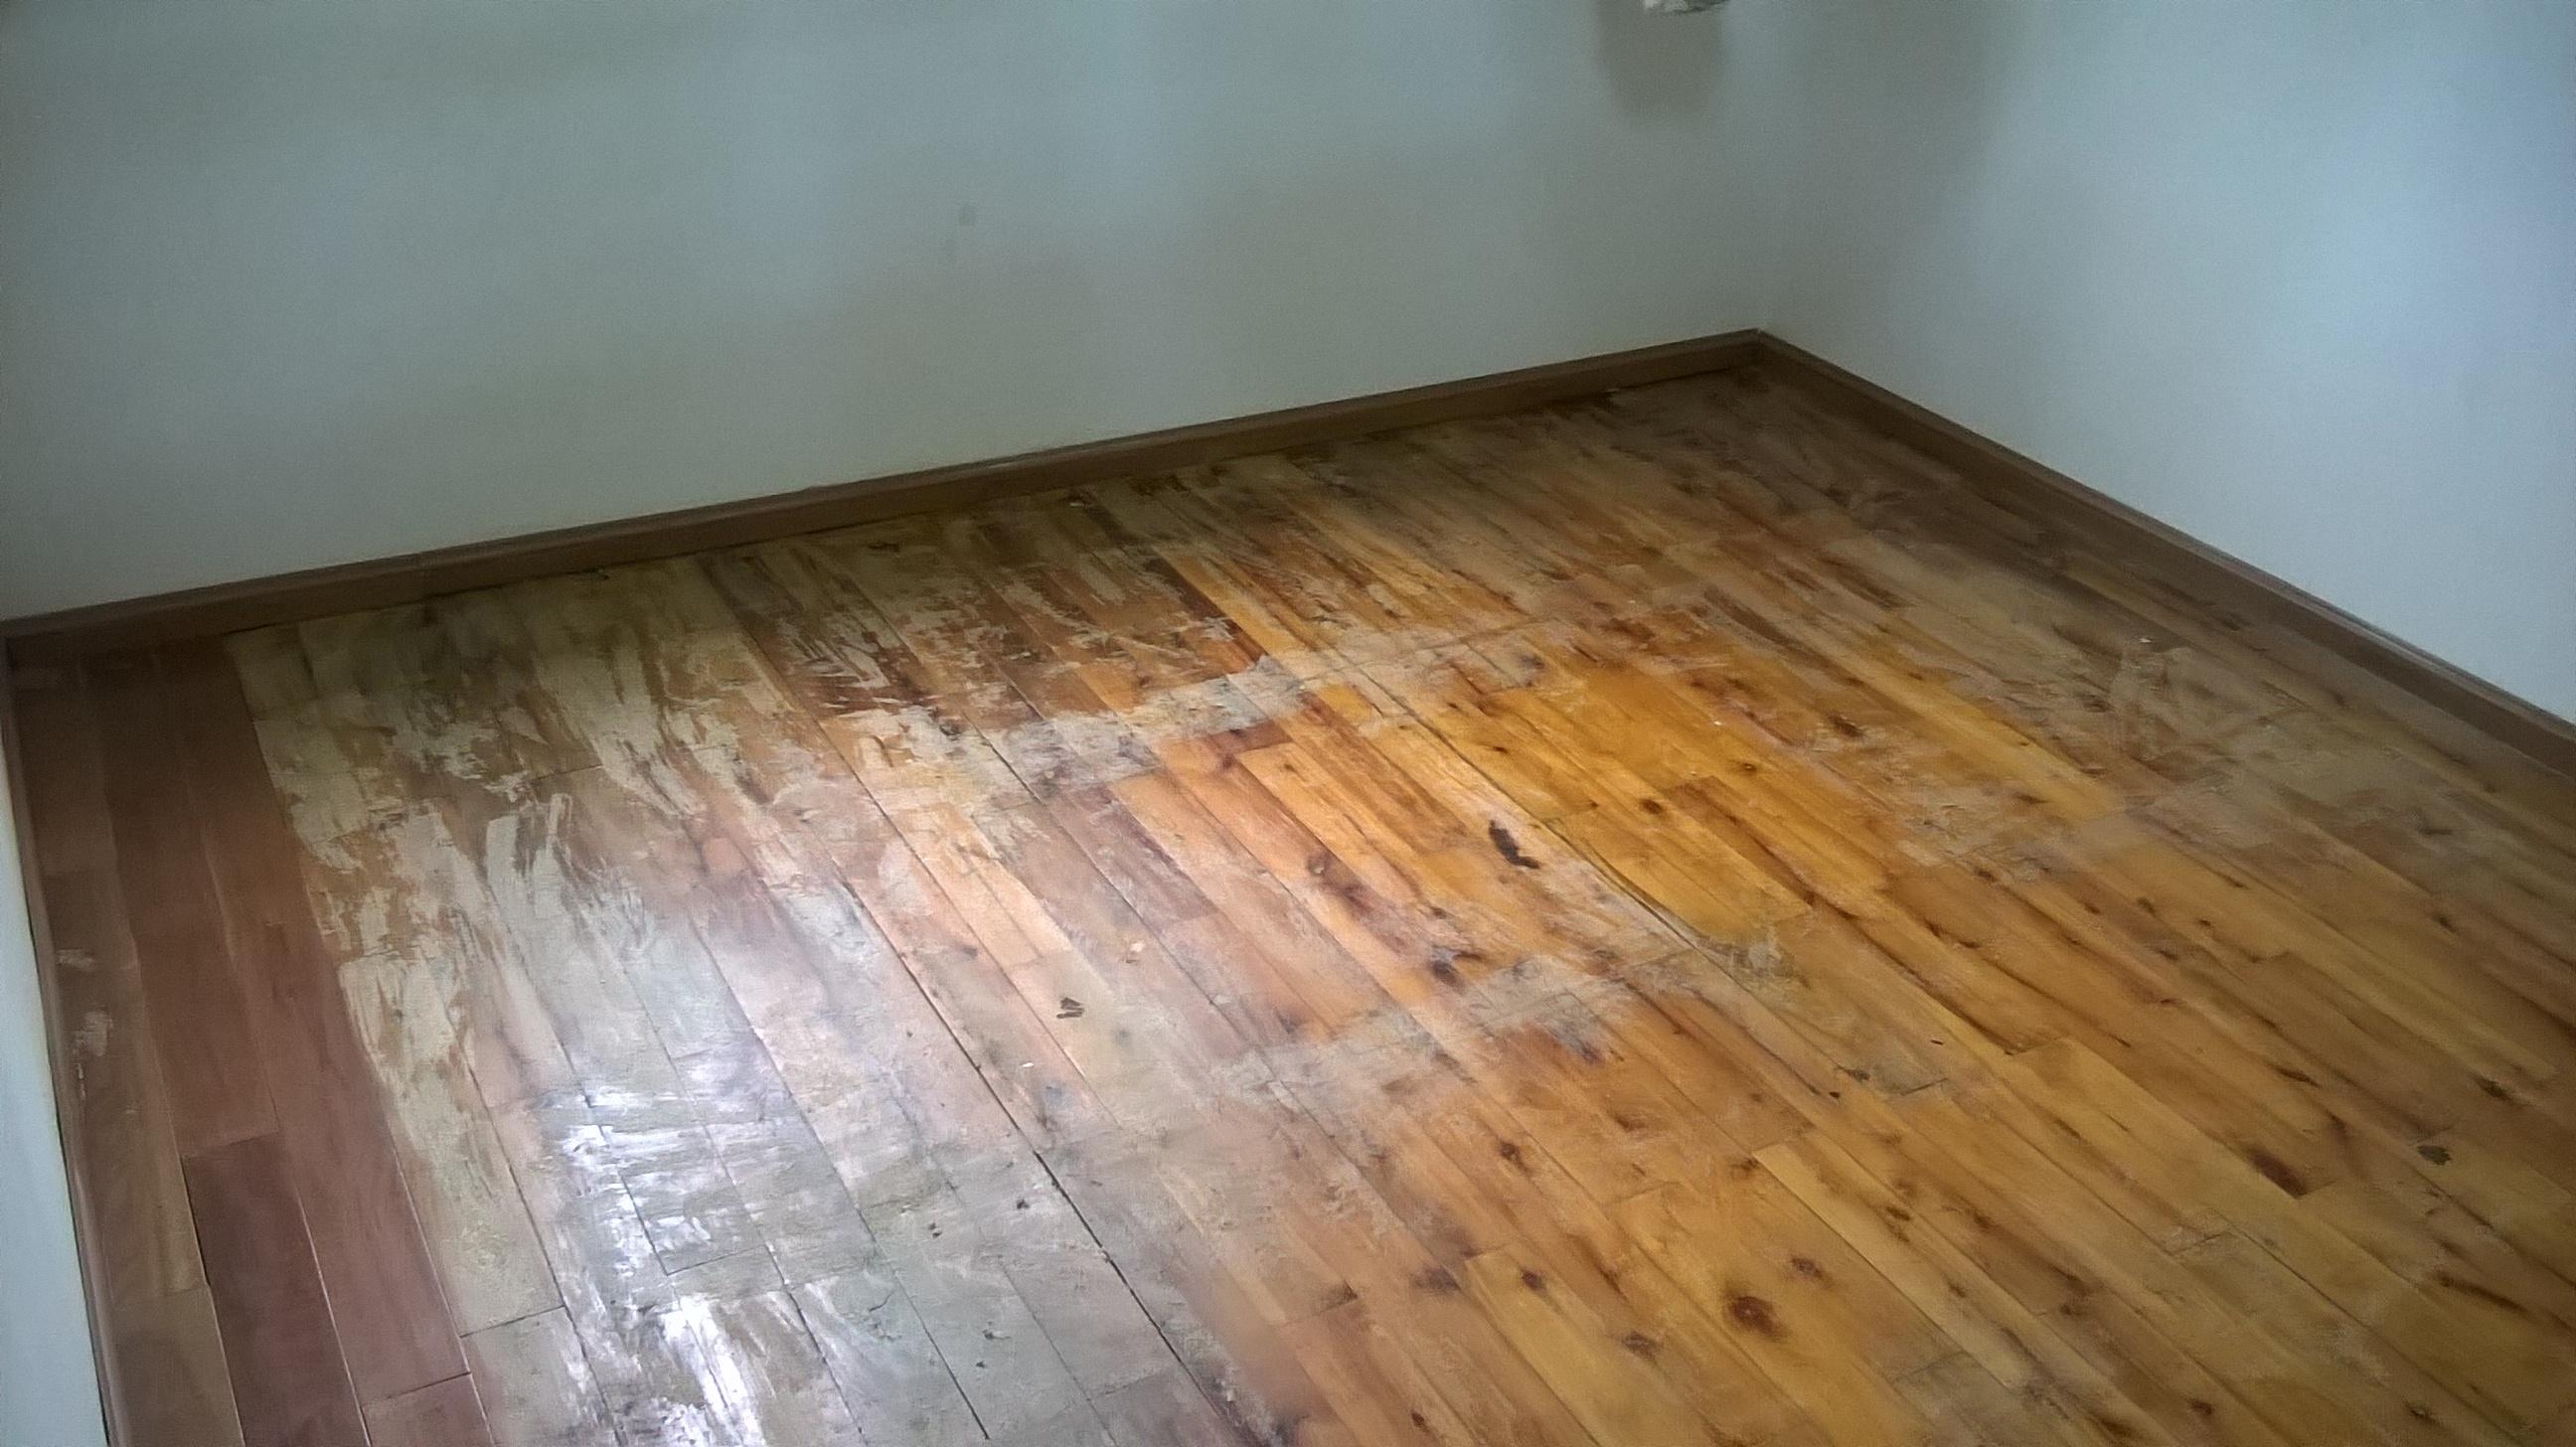 房间地板刷了油性清漆,我想用环保点的水性漆来遮盖住气味,可行否?